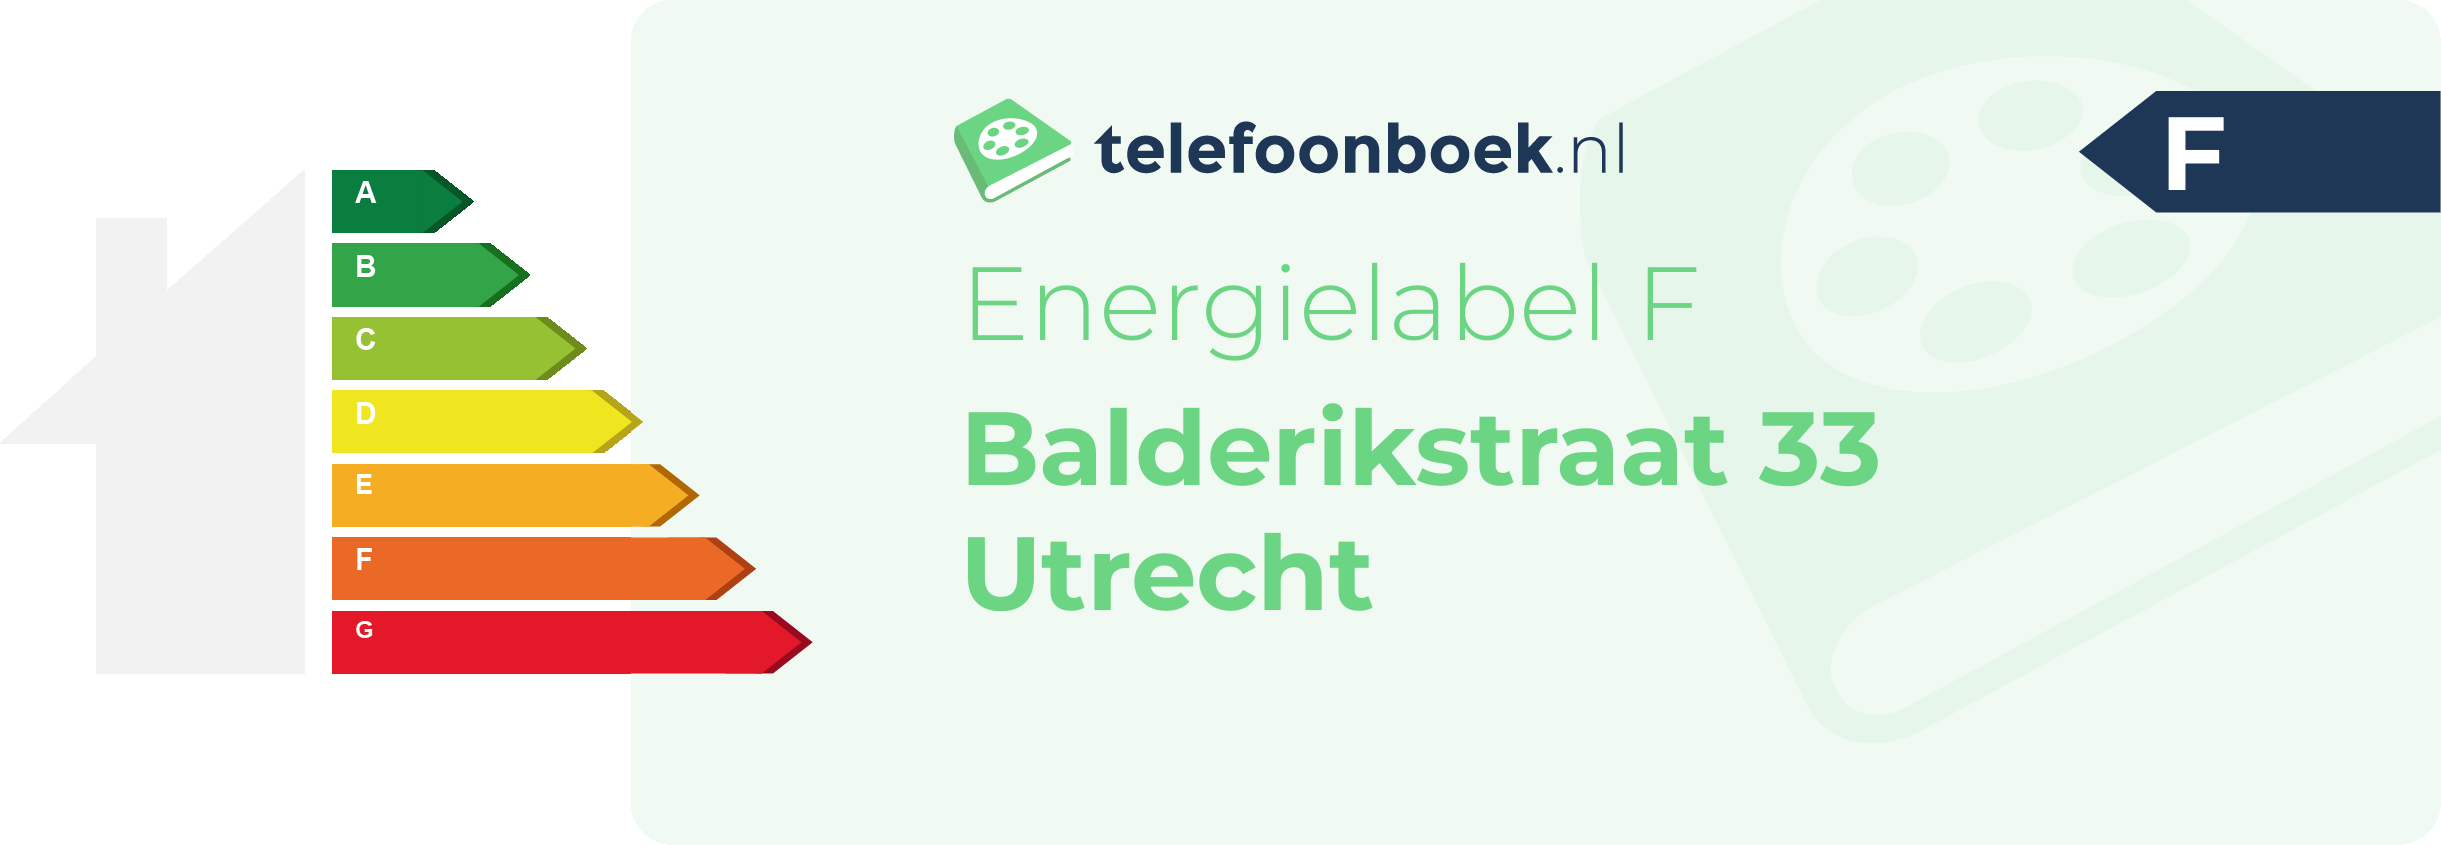 Energielabel Balderikstraat 33 Utrecht